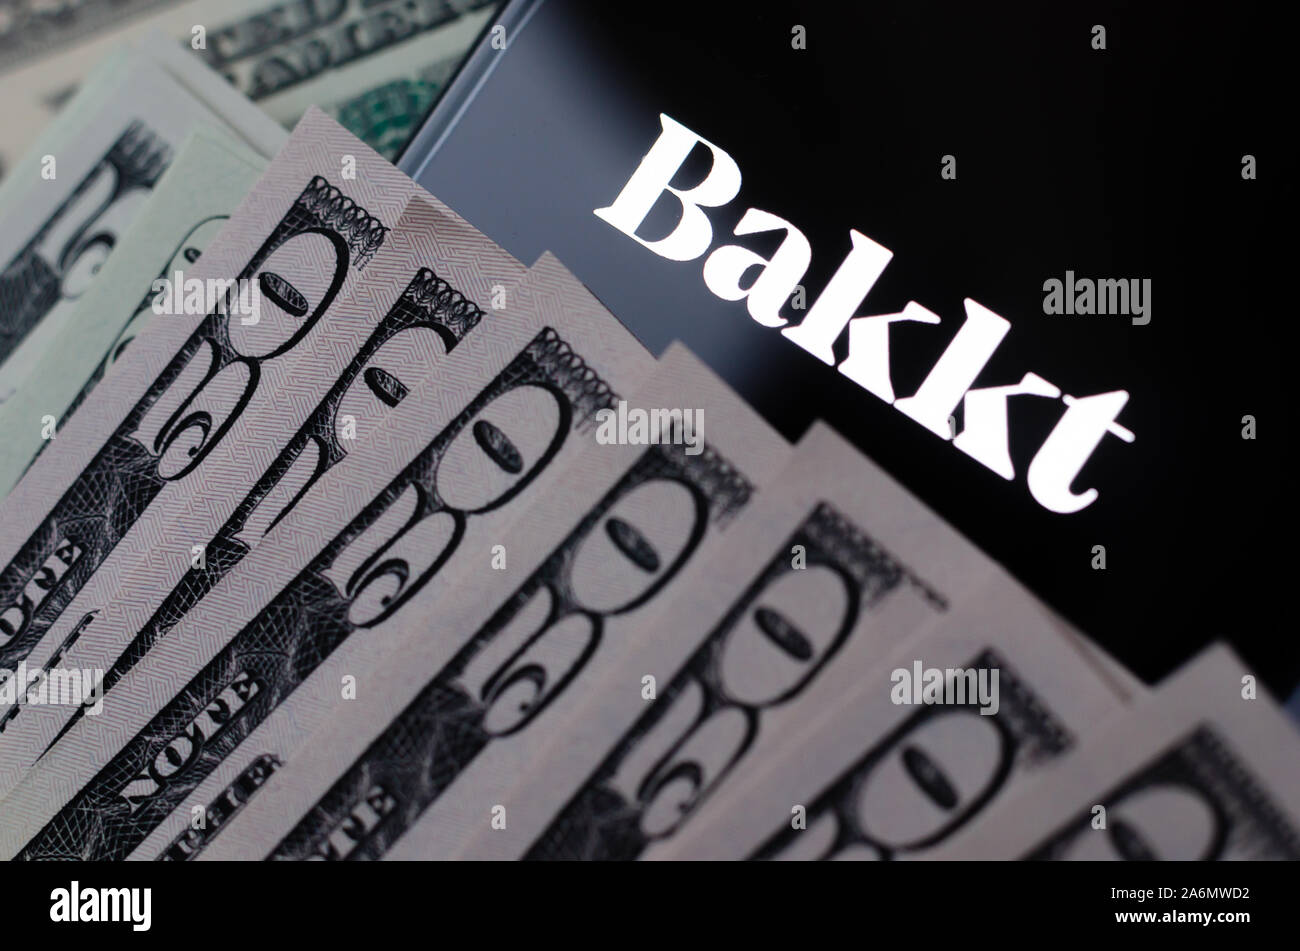 Bakkt ist ein digitaler Assets Custody Service, für Bakkt Bitcoin Futures Kontrakten bekannt. Konzeptionelle Foto. Stockfoto